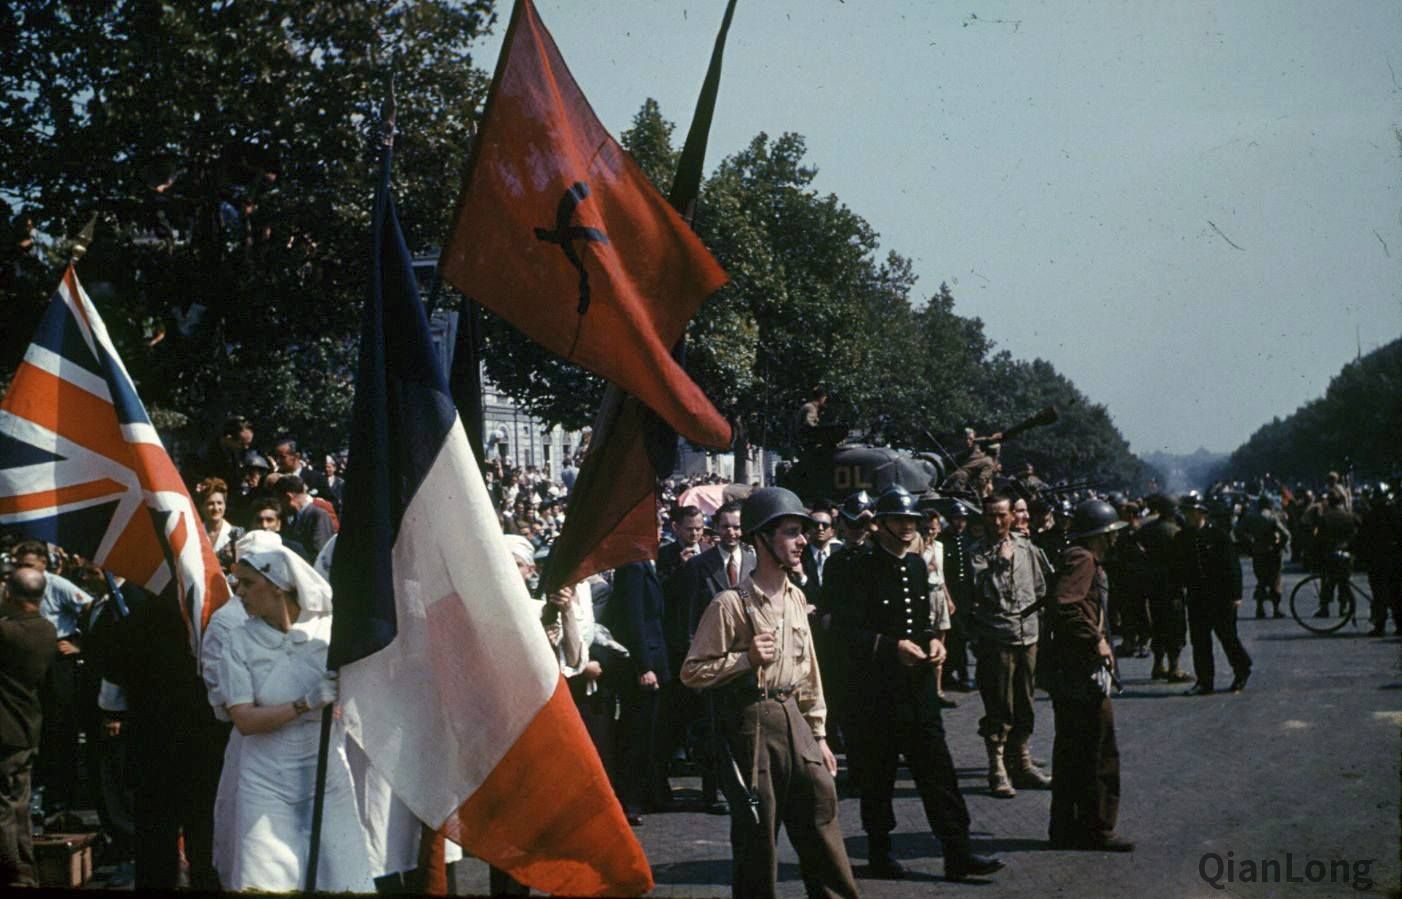 在尋找盟軍解放巴黎的照片時，我發現了這張能看到法國共產黨旗幟的照片